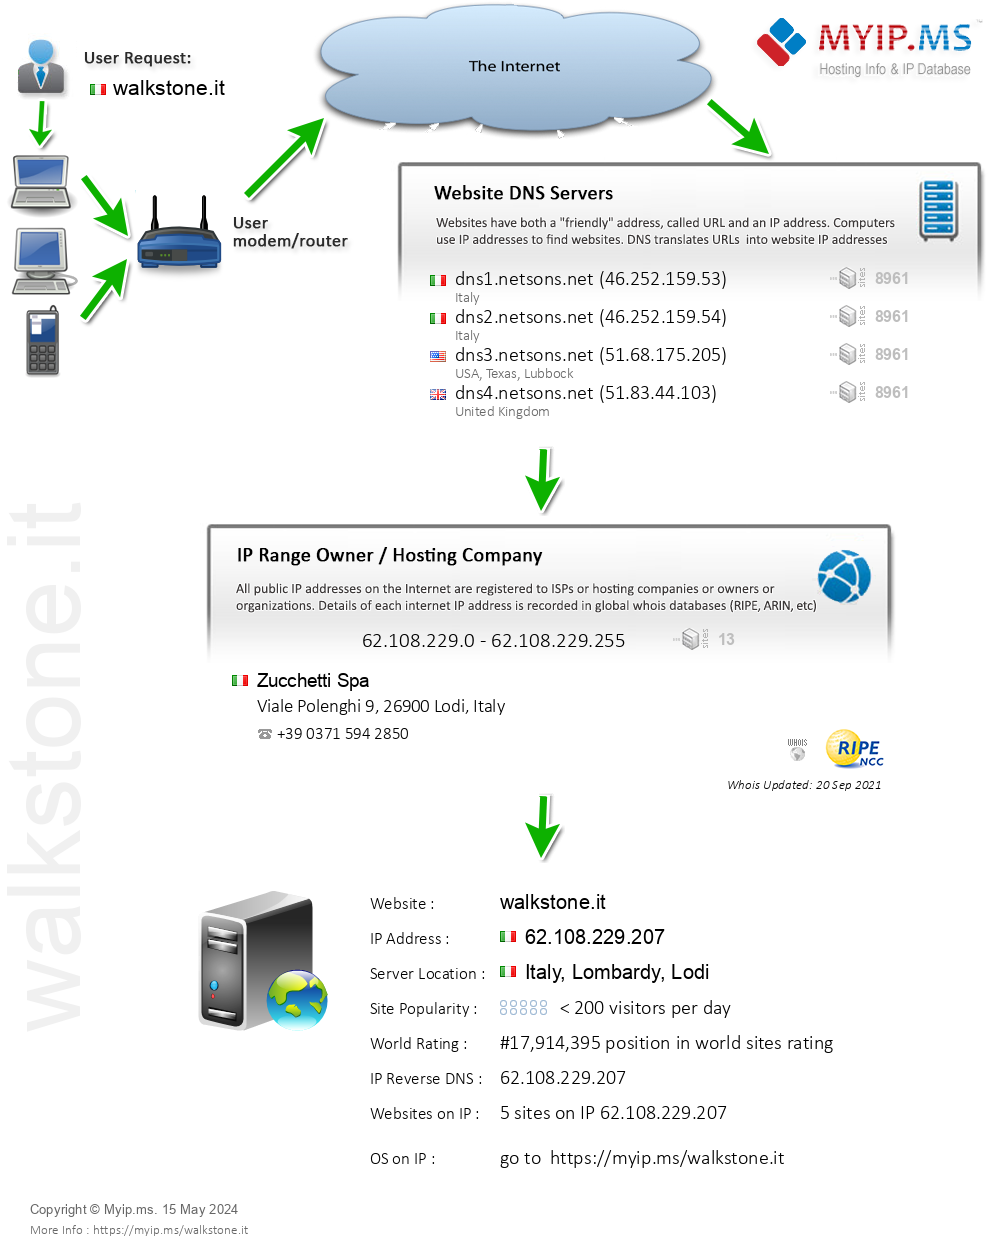 Walkstone.it - Website Hosting Visual IP Diagram